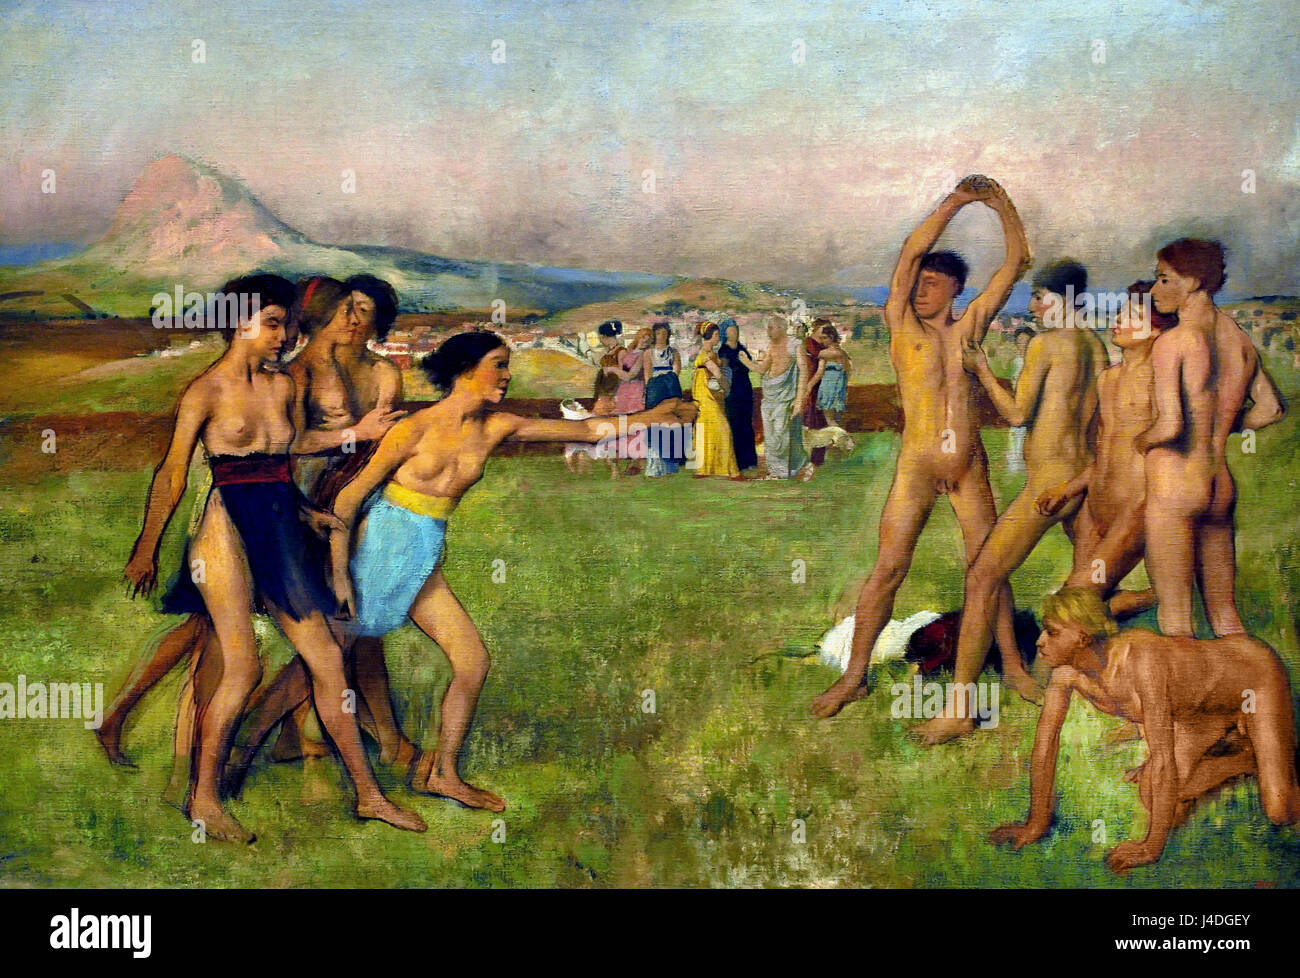 Junge Spartaner Ausübung 1860 von Hilaire Germain Edgar Degas 1834-1917 Frankreich Französisch (Plutarch schreibt von Lycurgus, der Gesetzgeber des alten Sparta bestellen spartanische Mädchen in wrestling Wettbewerbe engagieren, hier fordern sie die jungen zu kämpfen.) Stockfoto